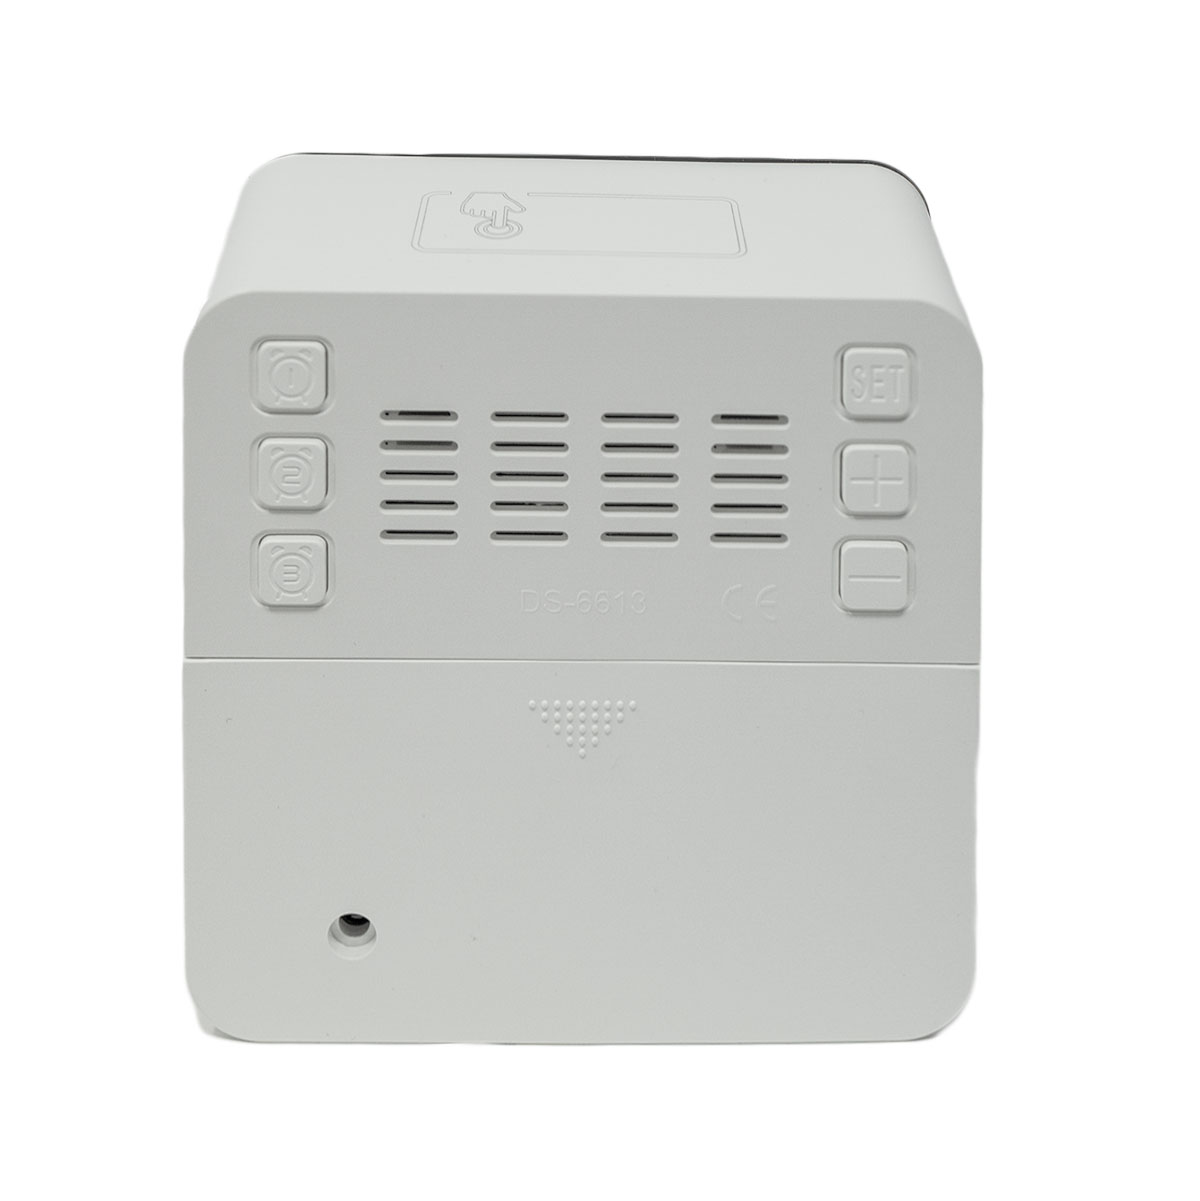 Quadratischer LED Wecker Digital Alarmwecker Uhr Schlummerfunktion Modern Touch Weiß